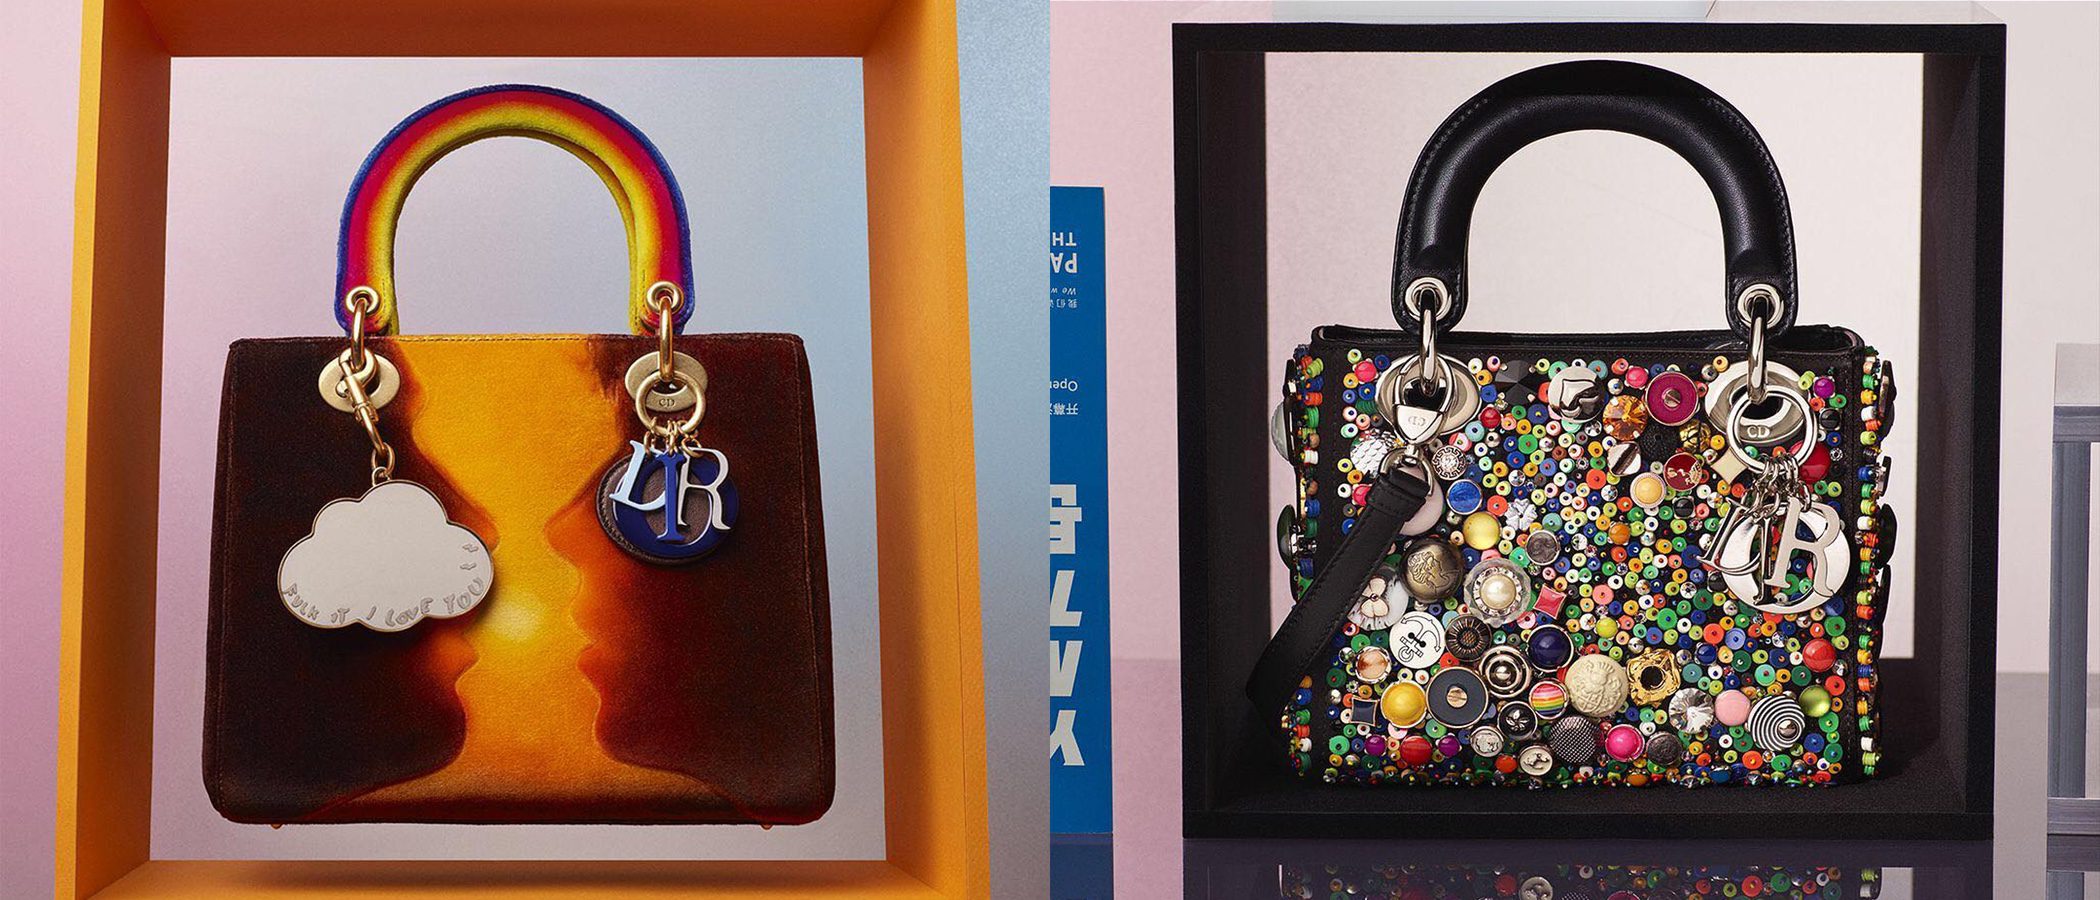 La reinvención de los bolsos Lady Dior llega con estilos artísticos